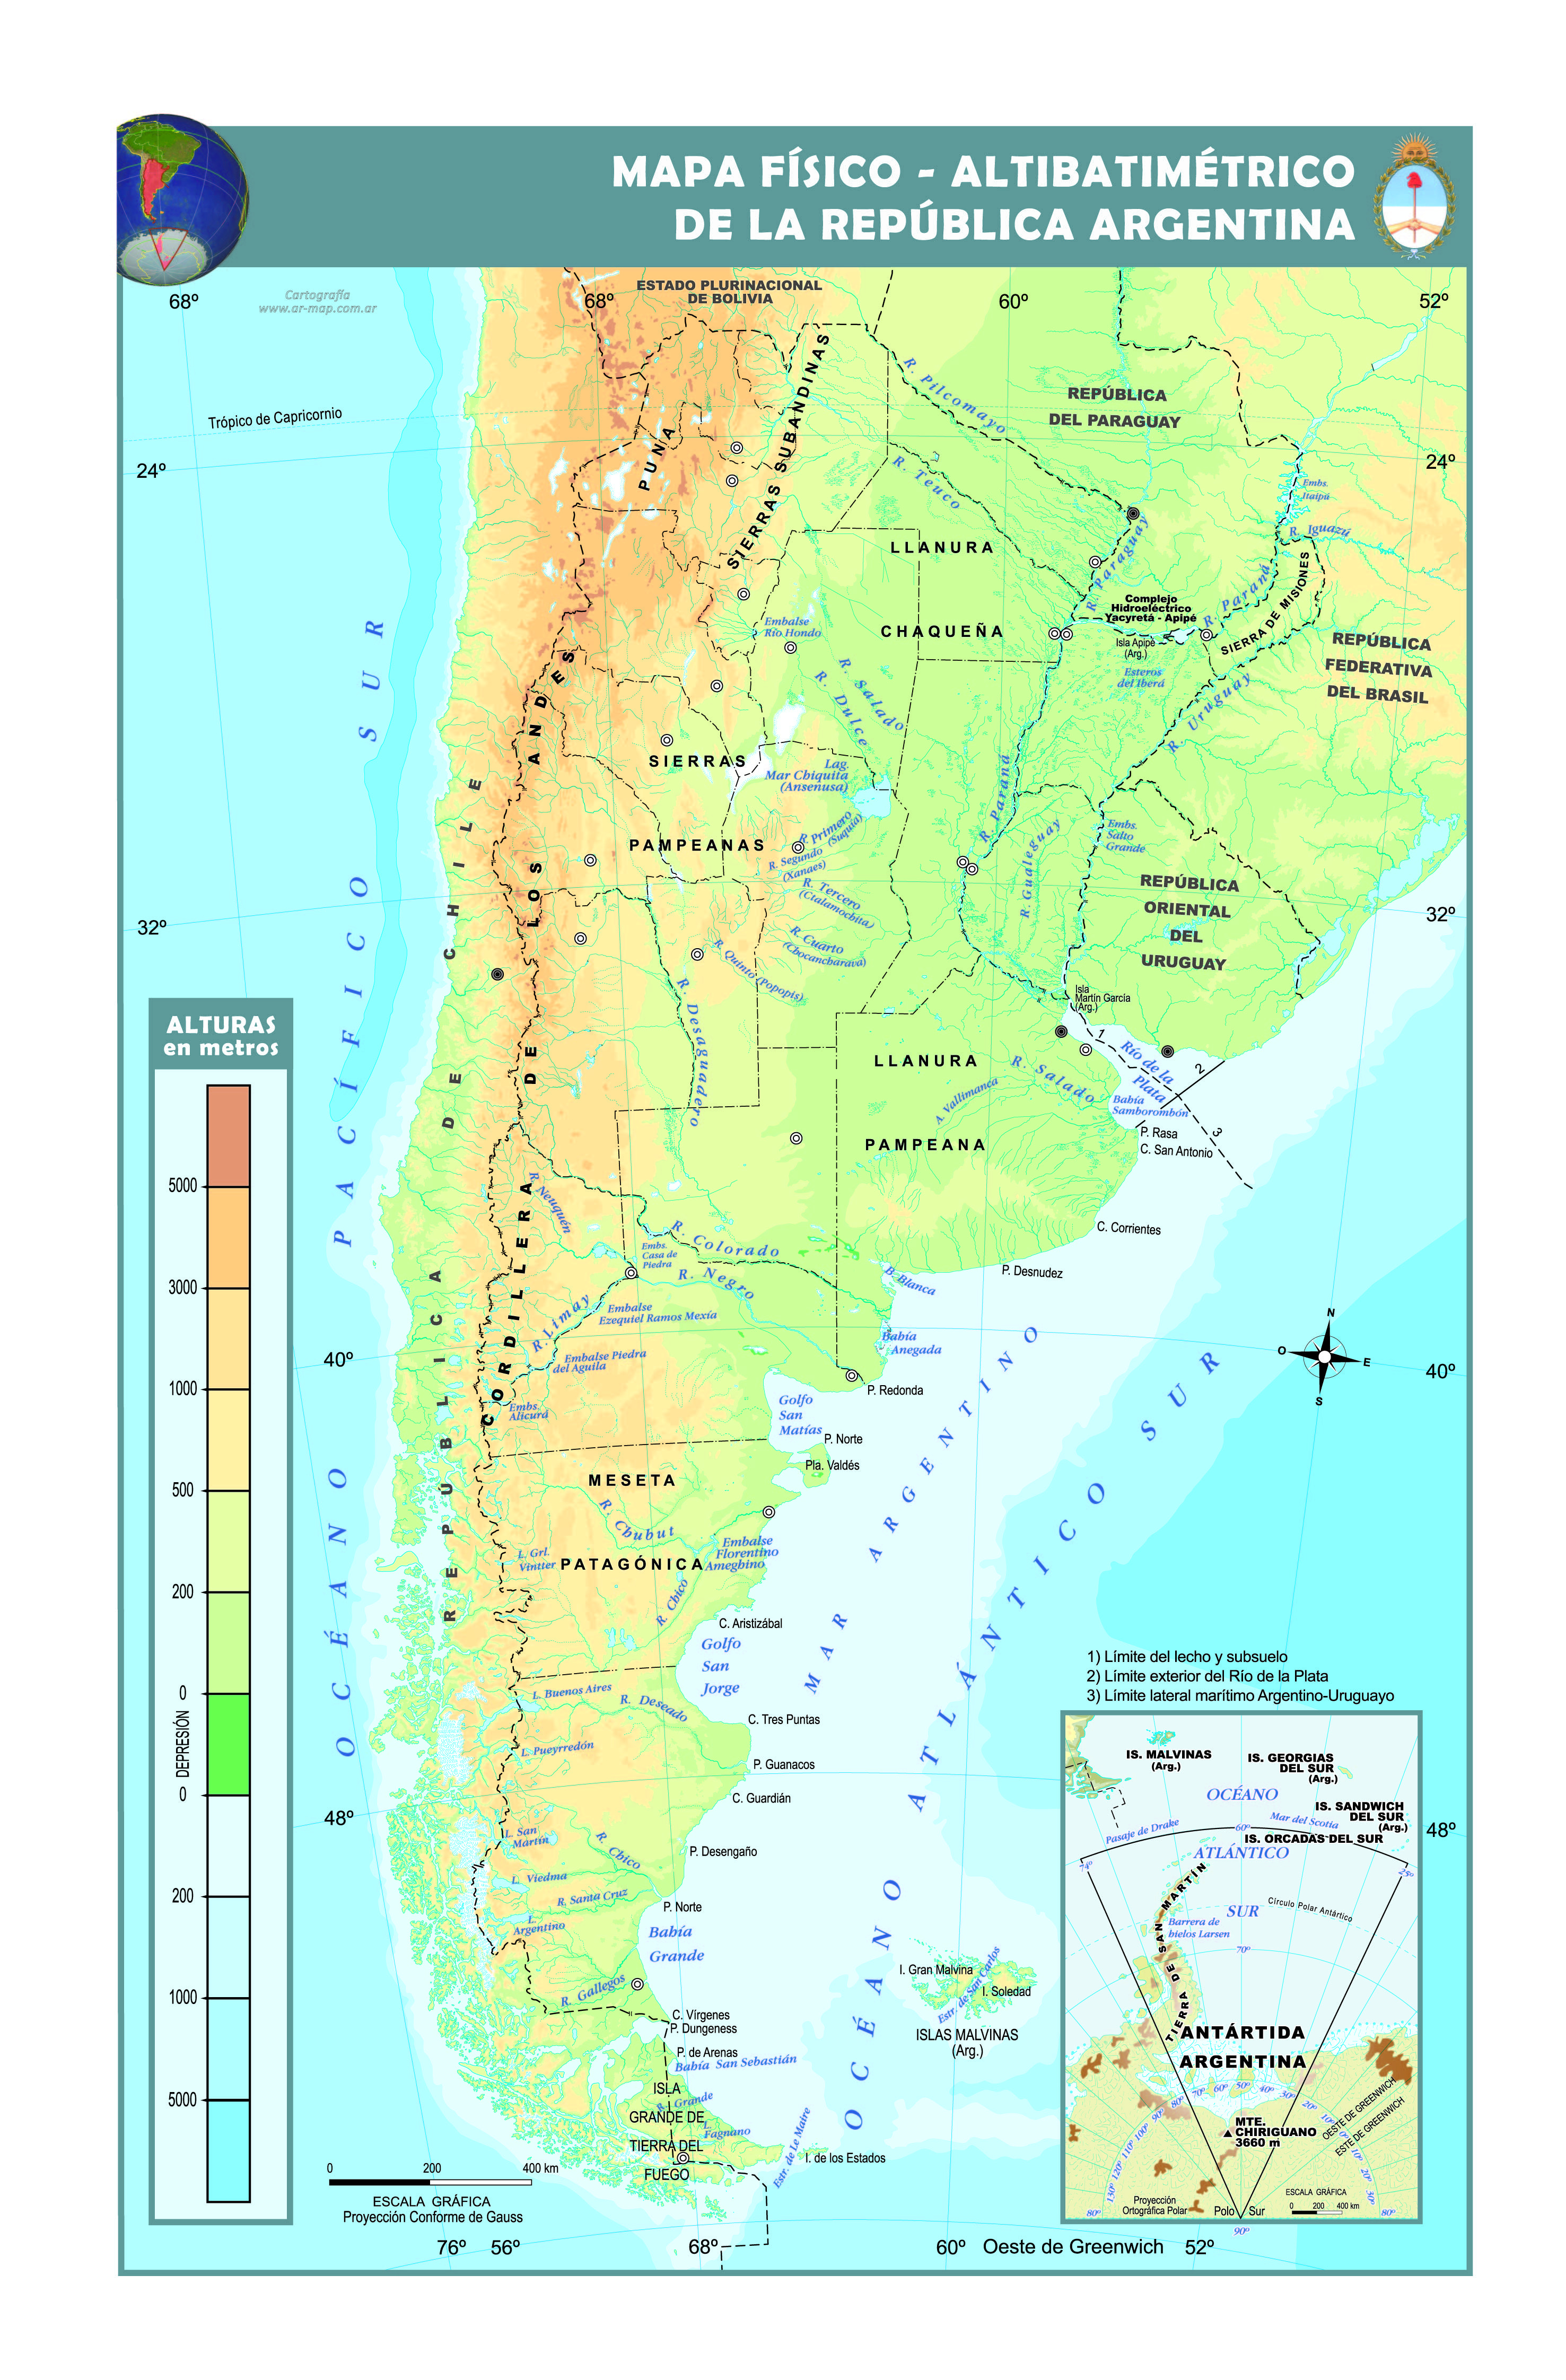 Mapa físico altibamétrico de la República Argentina